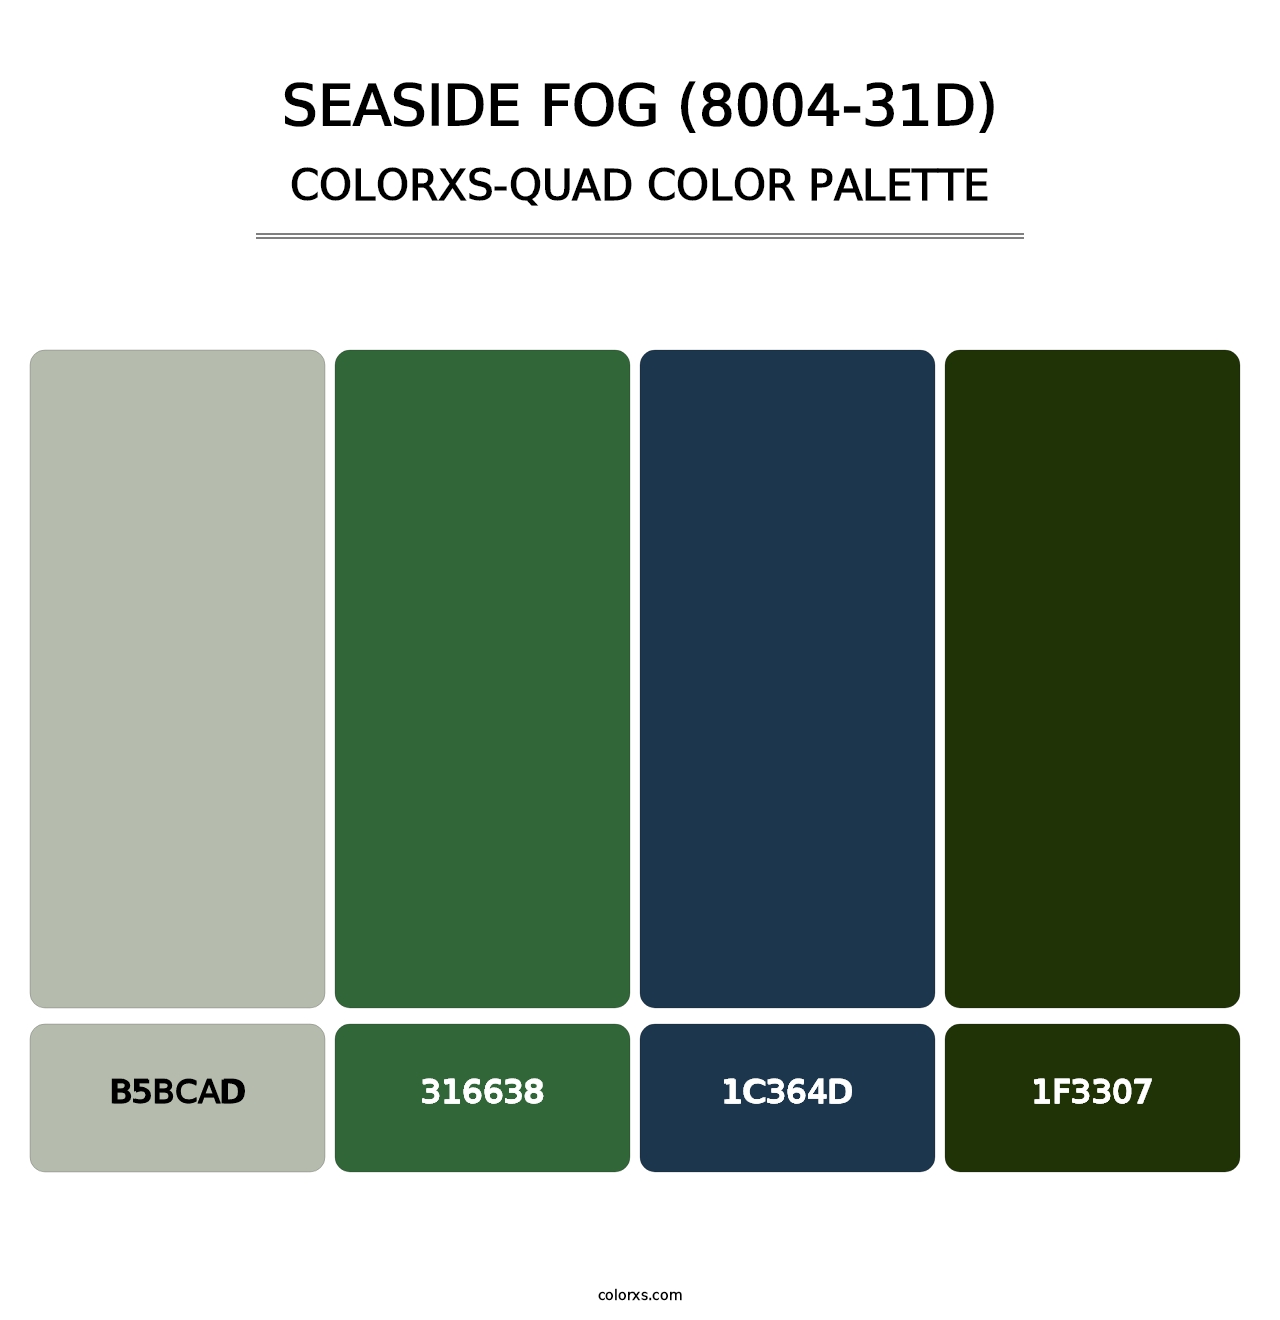 Seaside Fog (8004-31D) - Colorxs Quad Palette